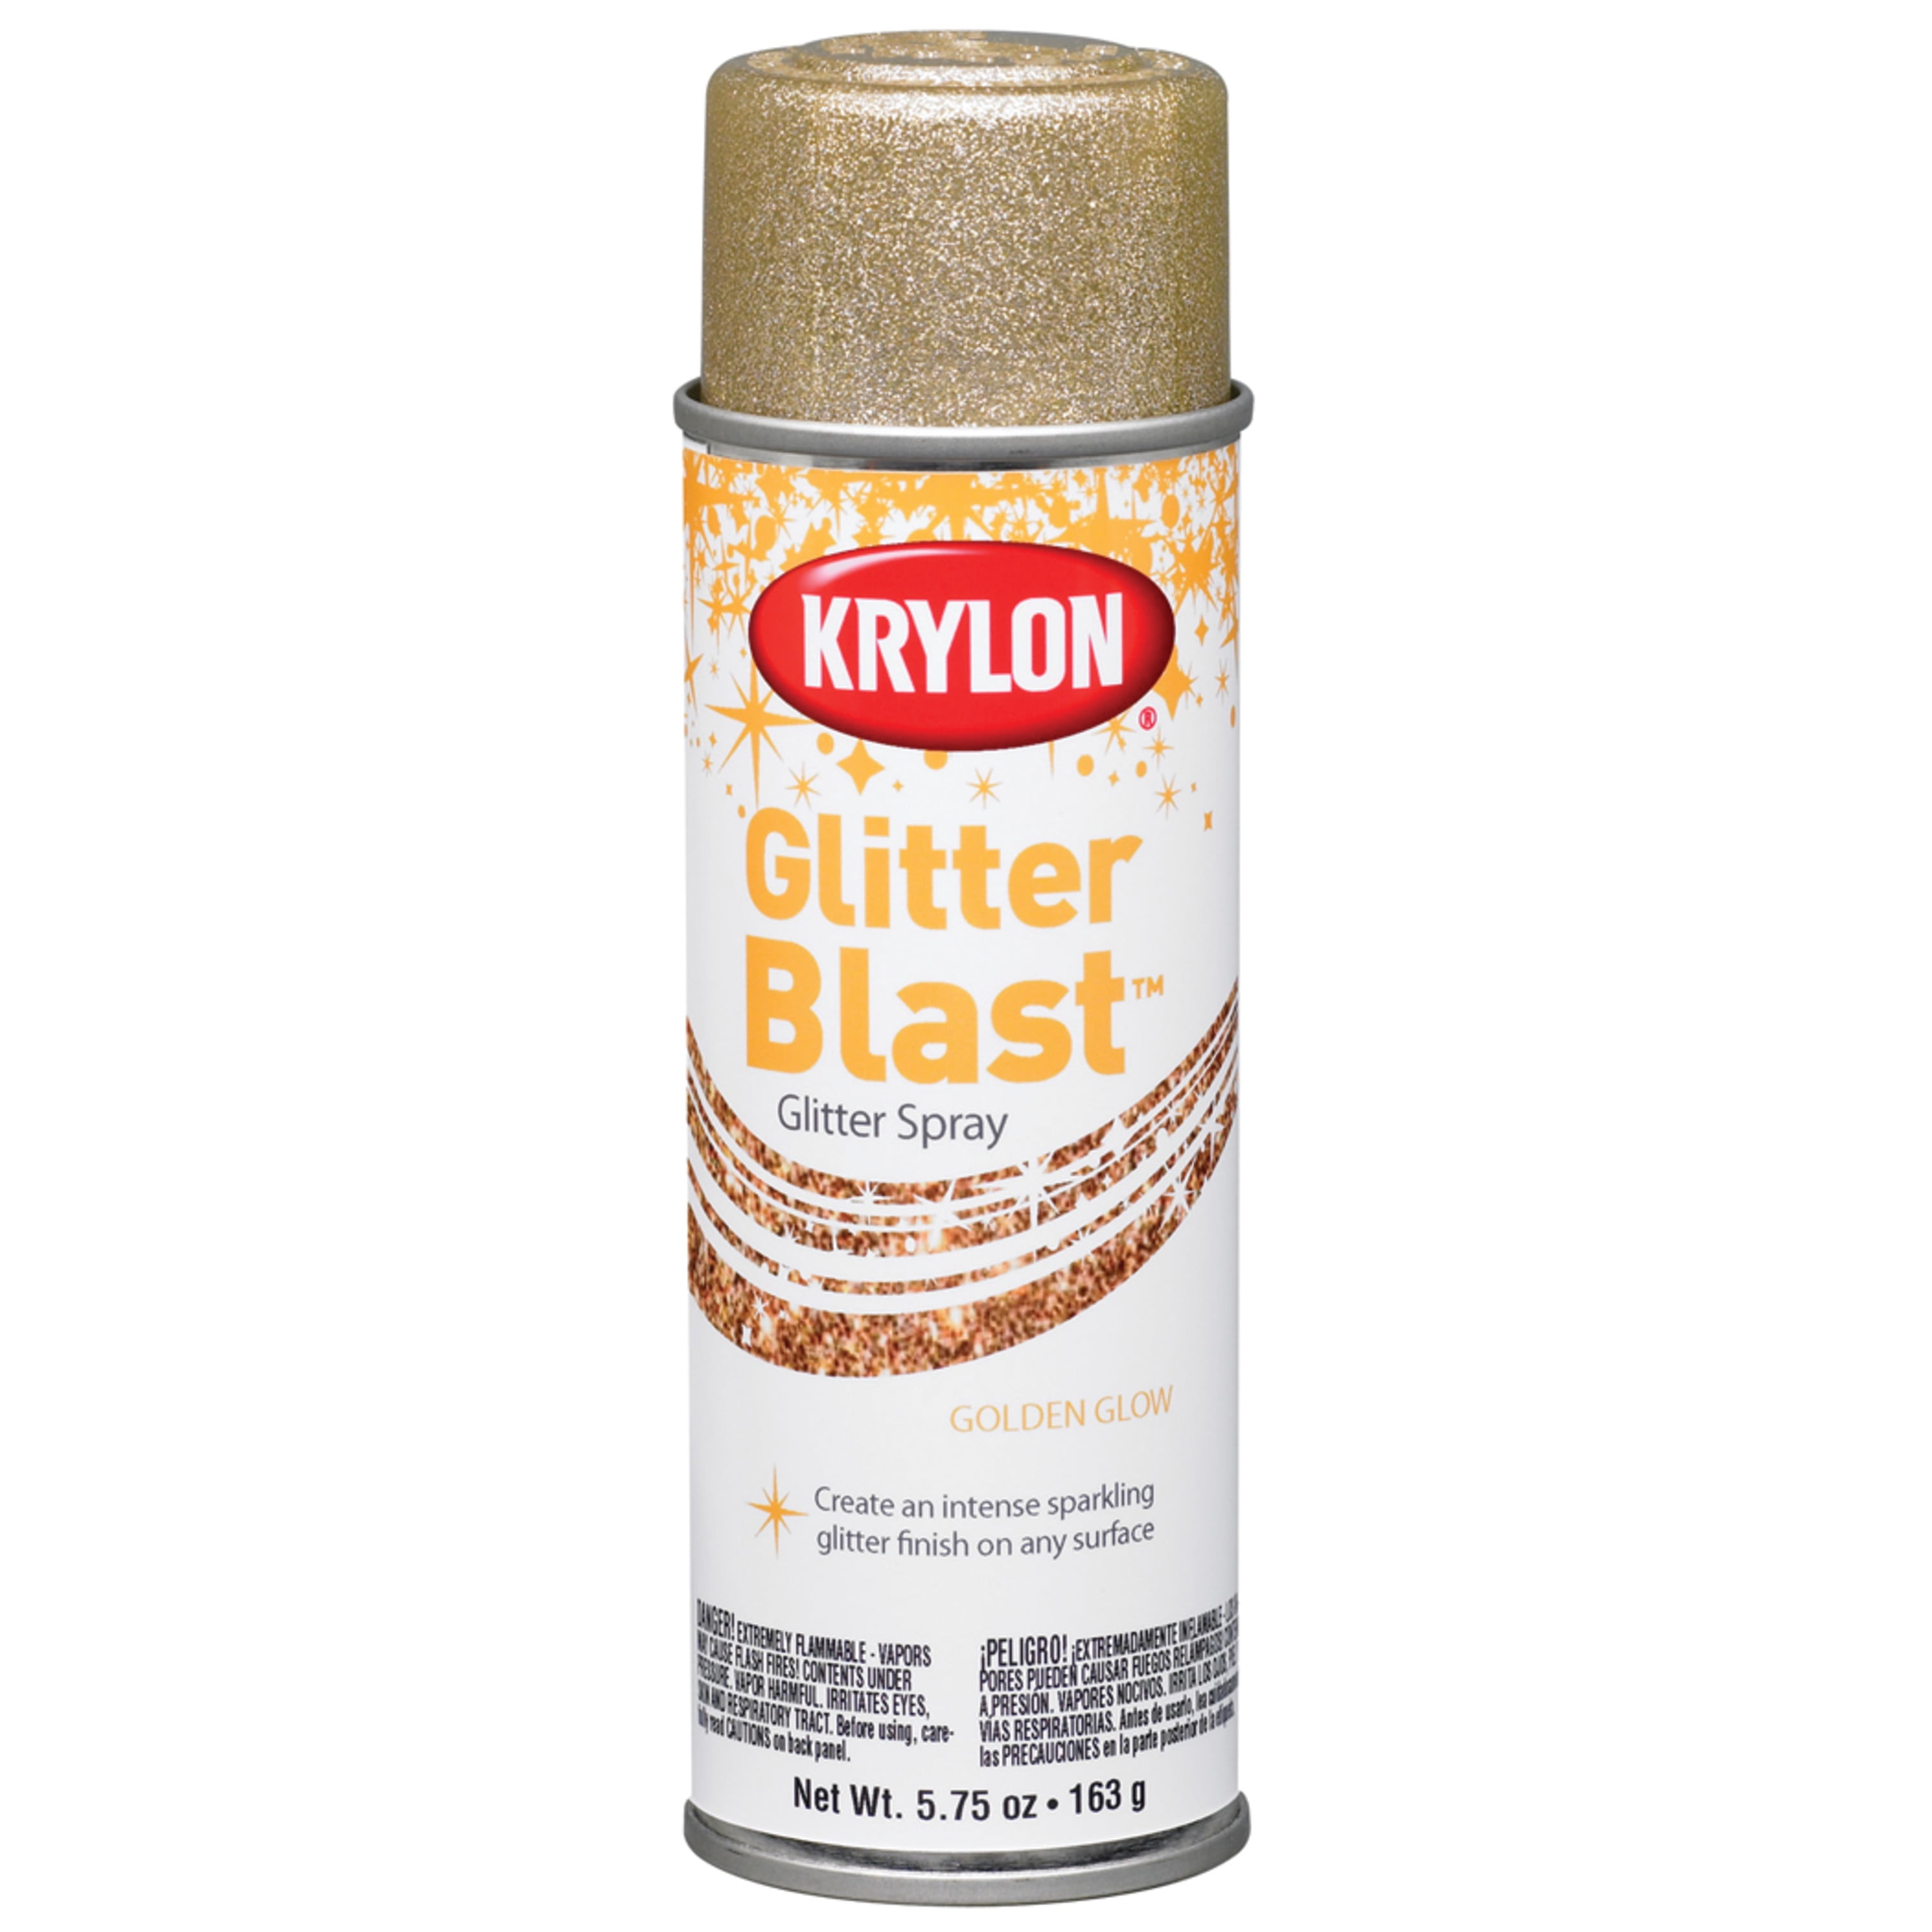 Krylon K03815A00 Craft Spray Paint, Glitter, Fierce Fuchs